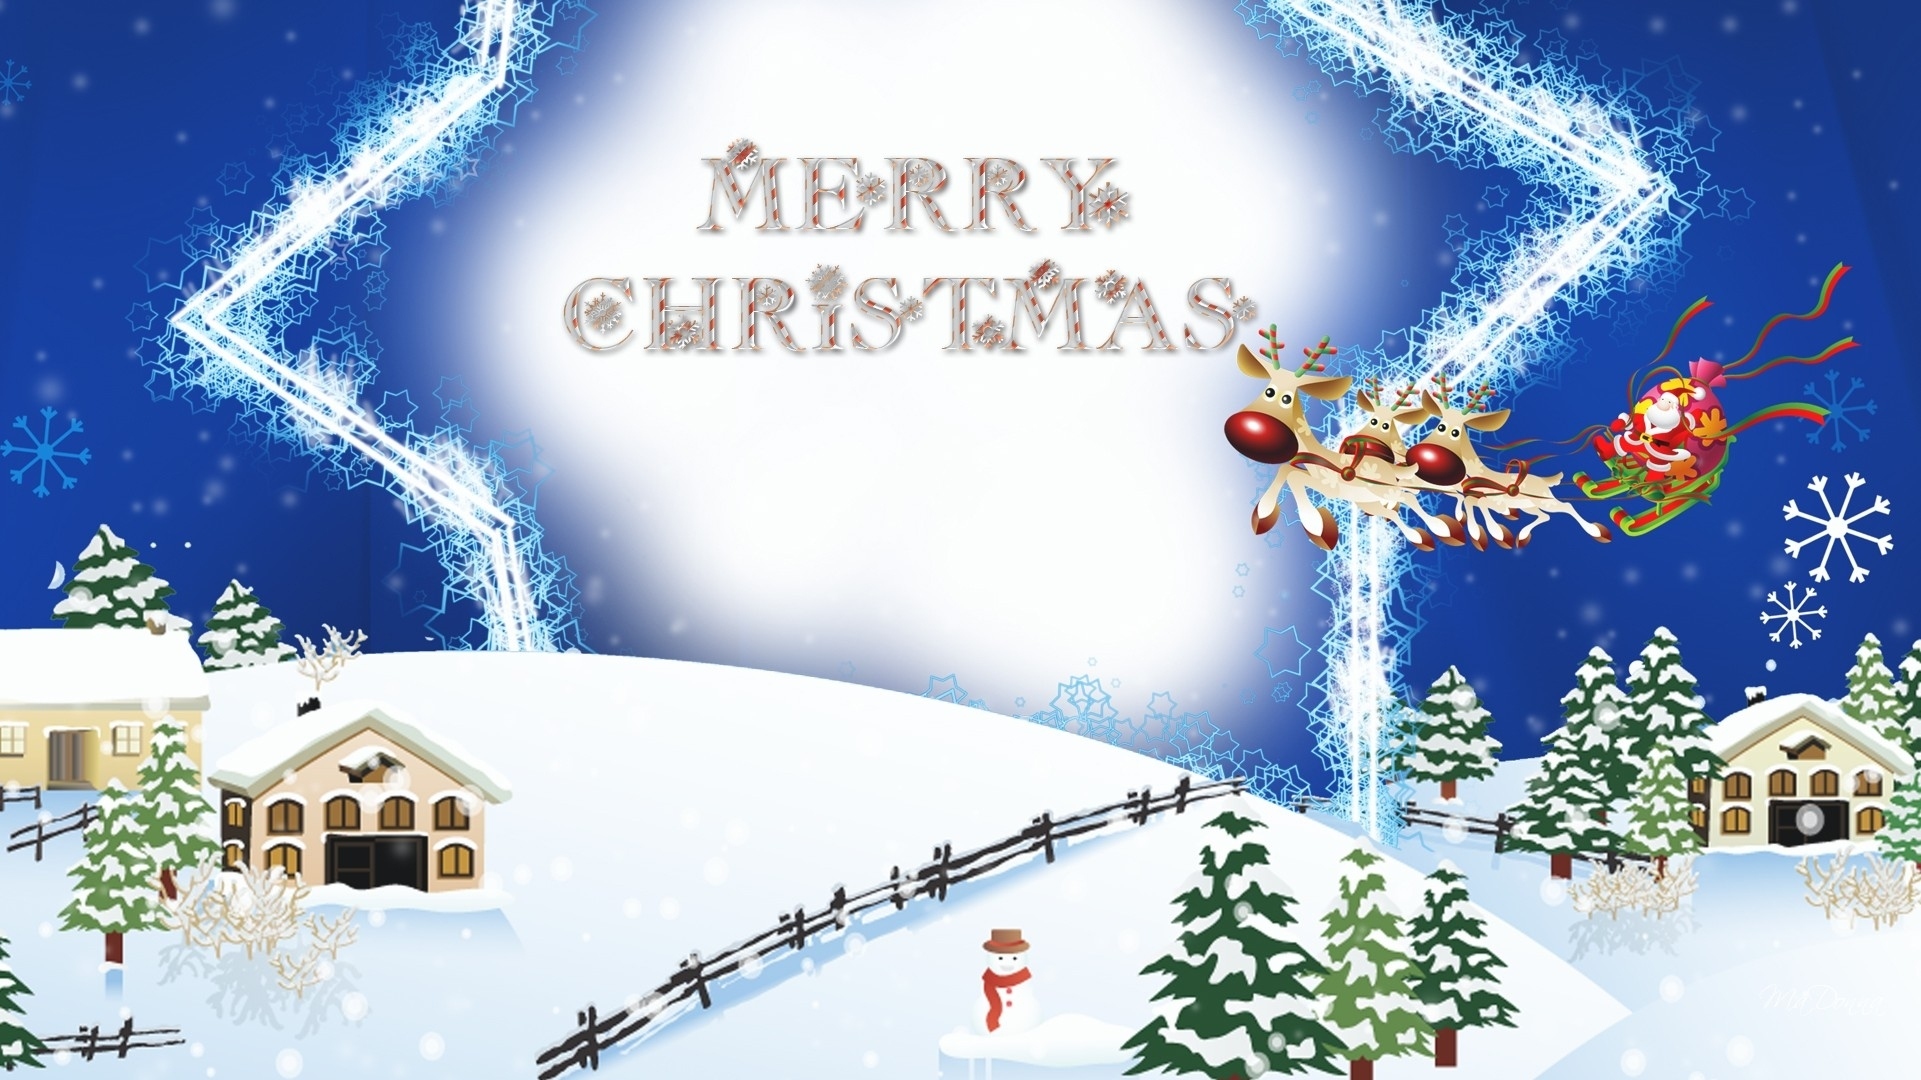 Christmas House Merry Christmas Reindeer Santa Claus Sleigh Snow Snowman 1921x1080